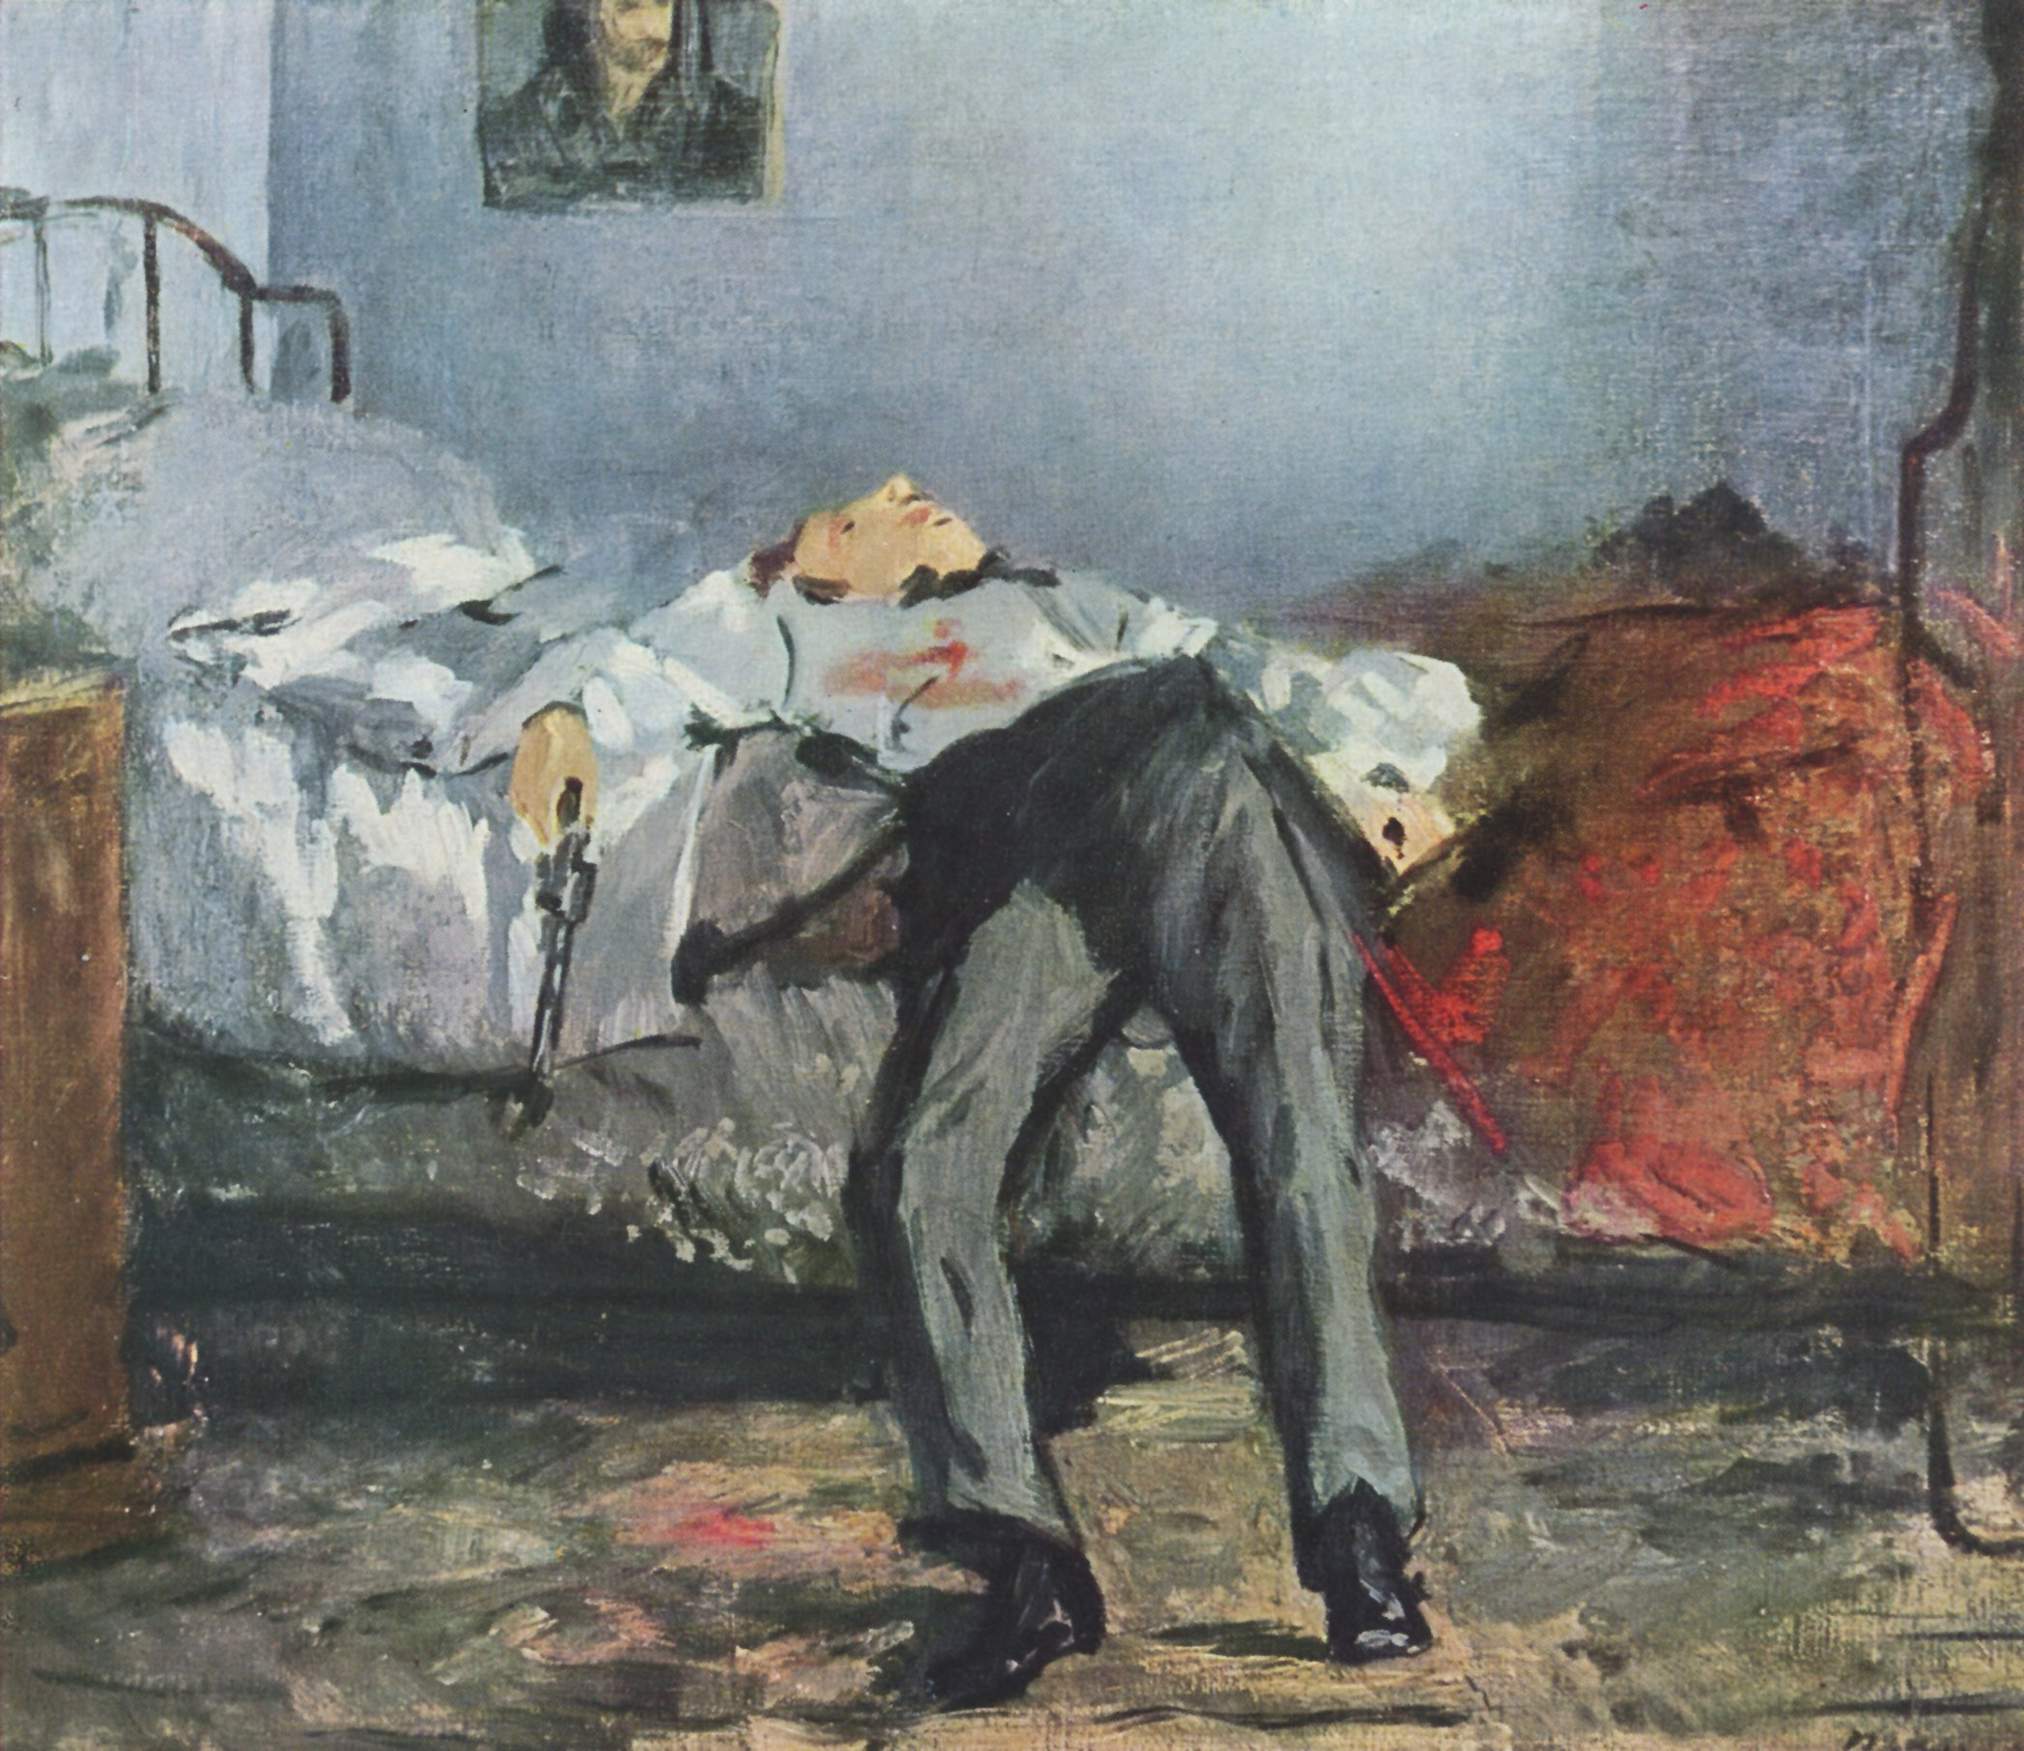 Le Suicidé by Édouard Manet - 1877–1881 - 38 cm × 46 cm Foundation E.G. Bührle